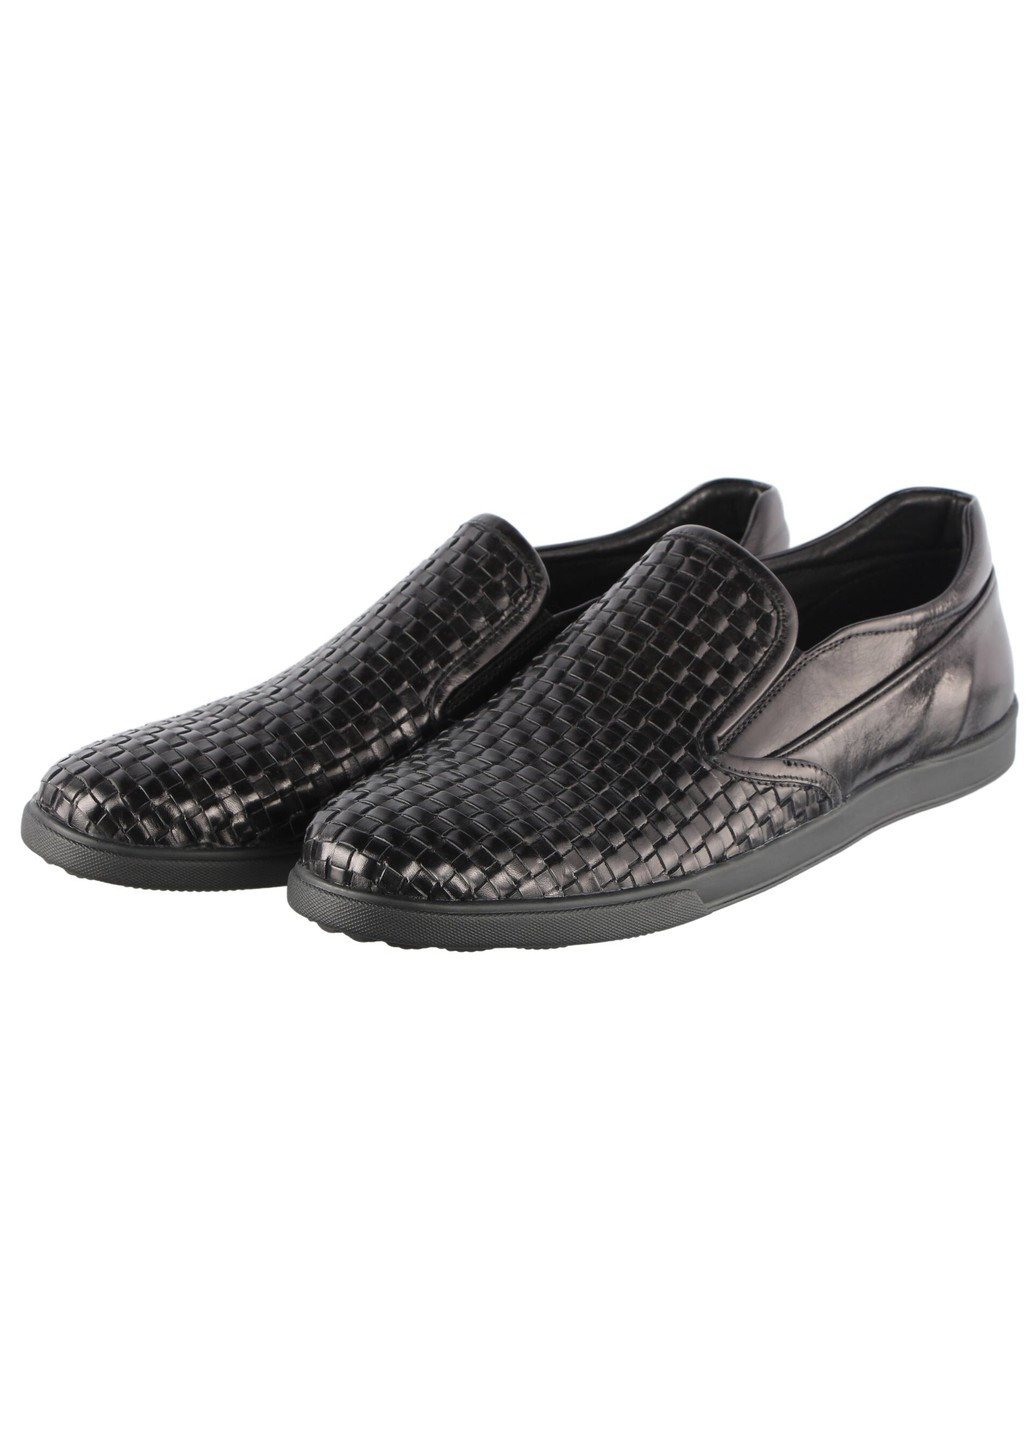 Черные мужские туфли 875331 Anemone без шнурков